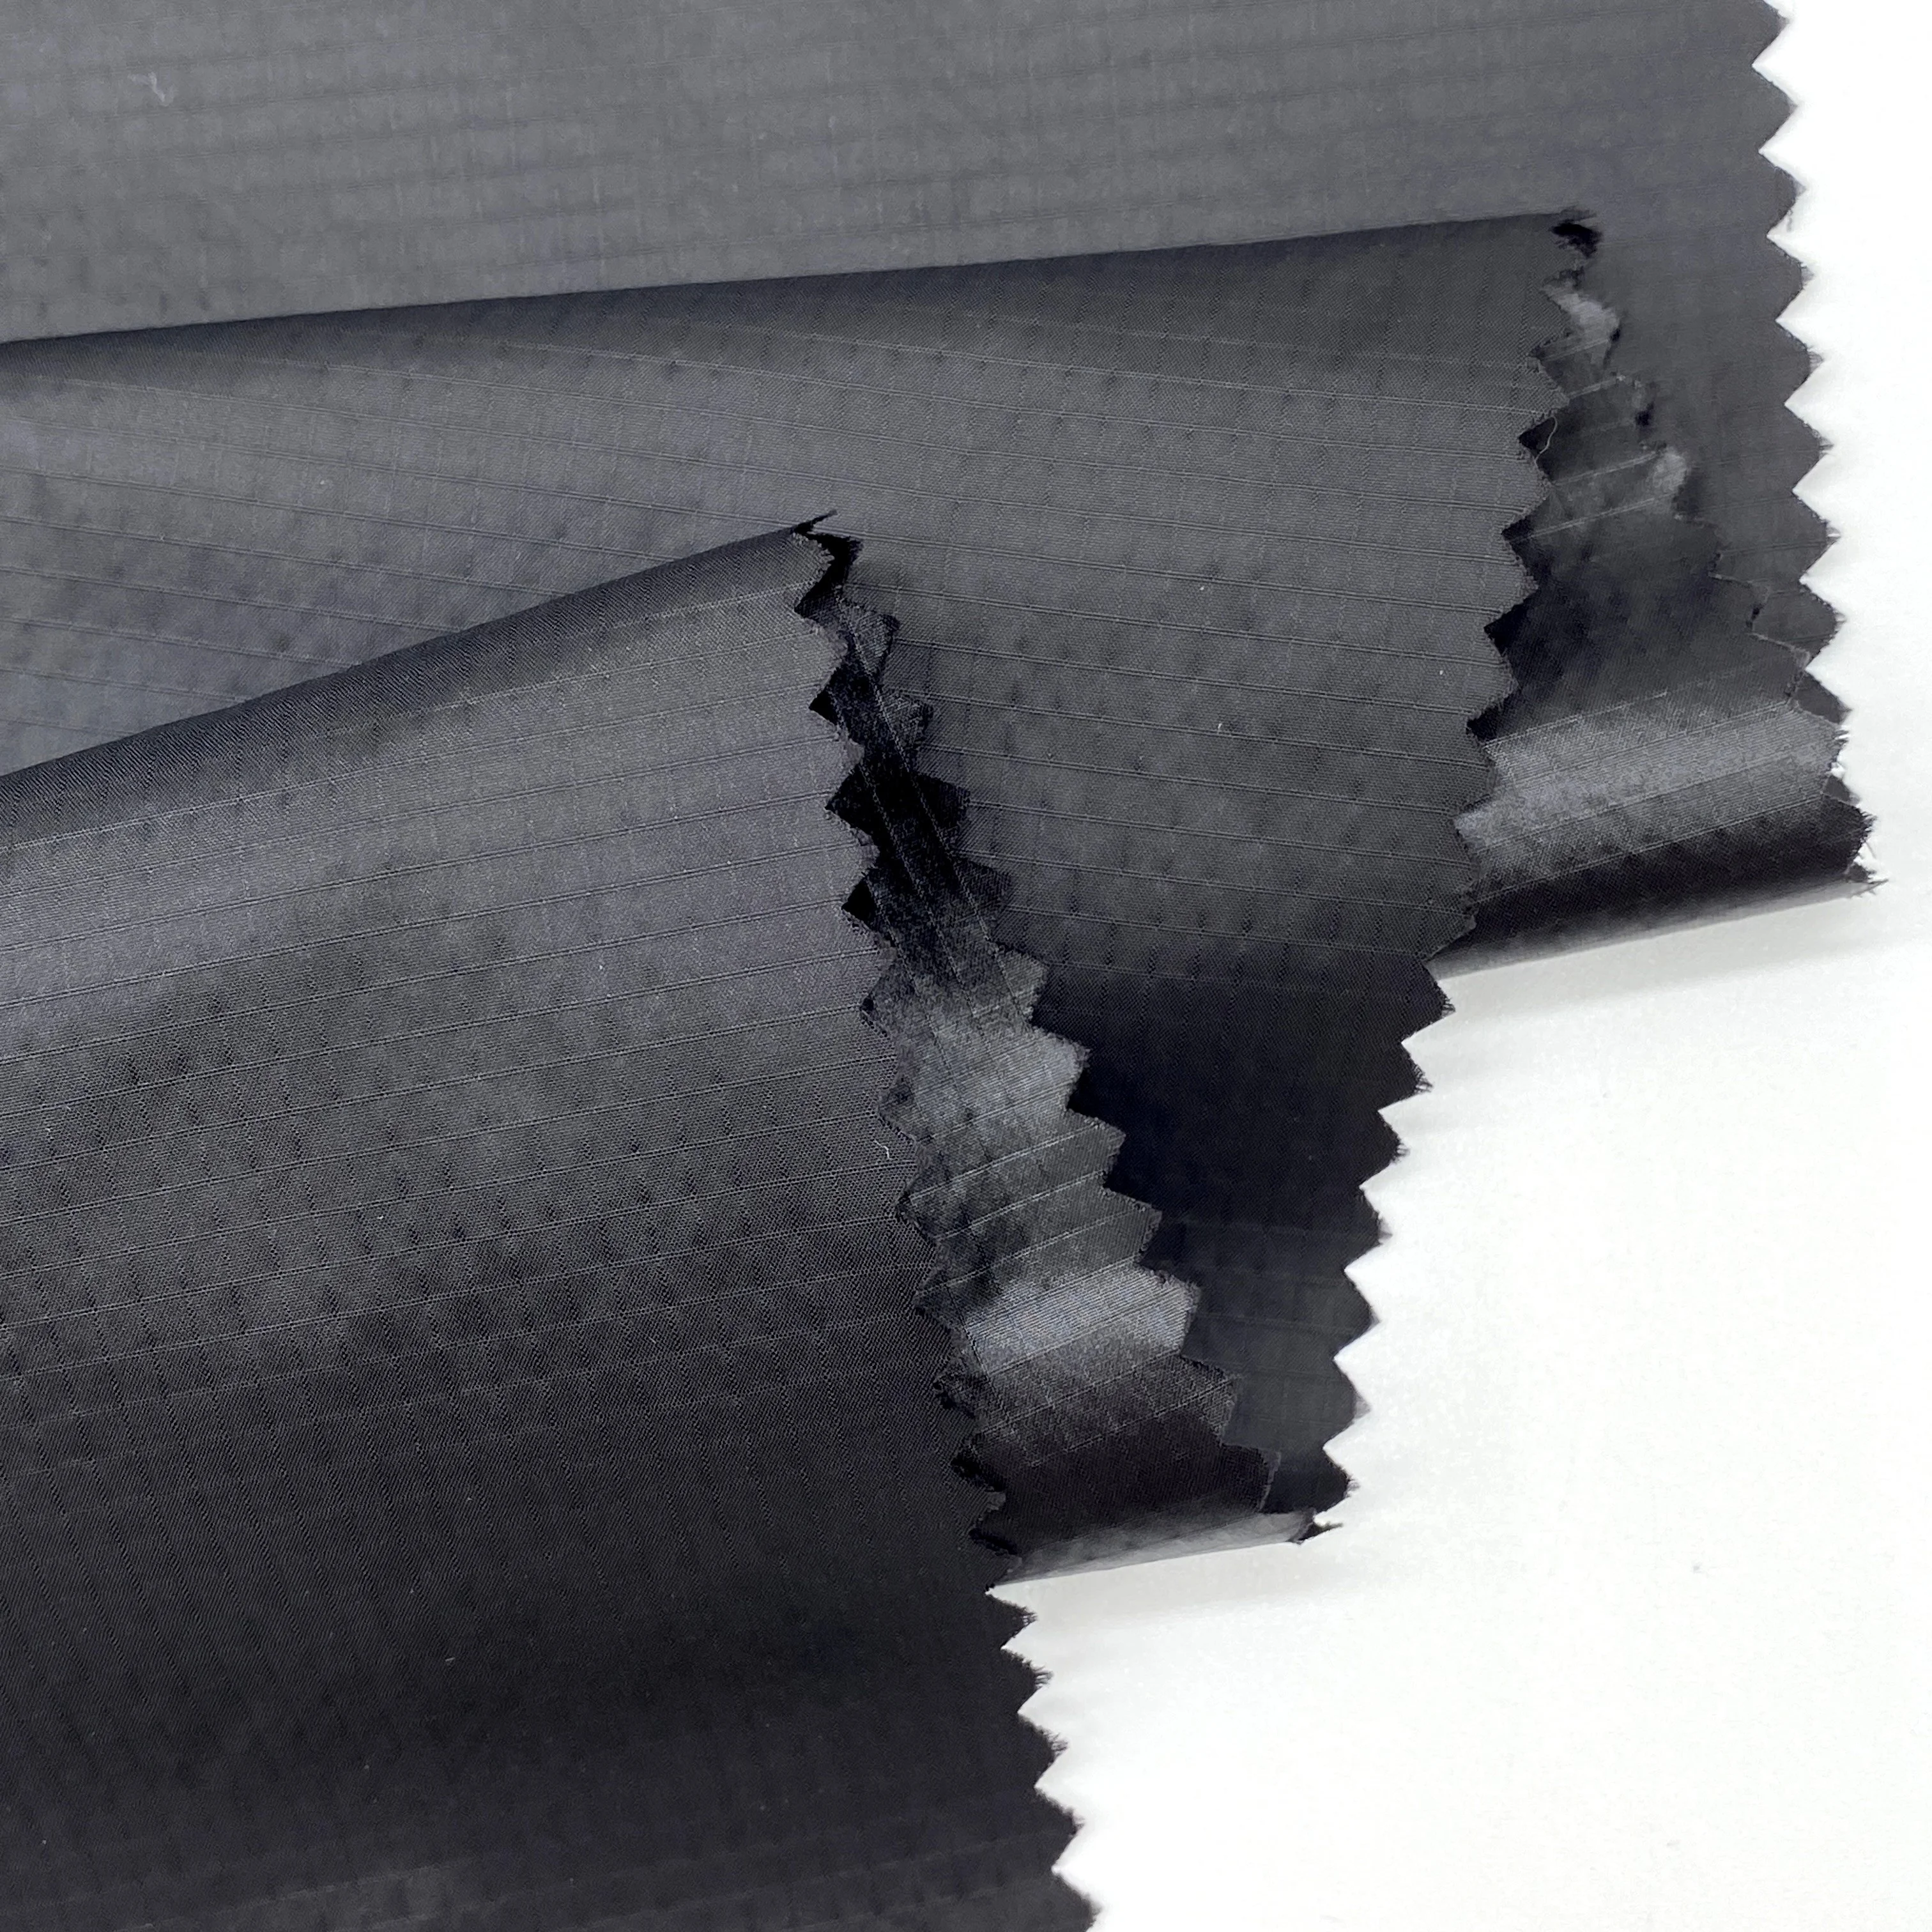 
OEKO-100 стандартная GRS 430T 0,2*0,2 см нейлоновая ткань Ripstop 100% водонепроницаемая отделка одежды мужских пальто 